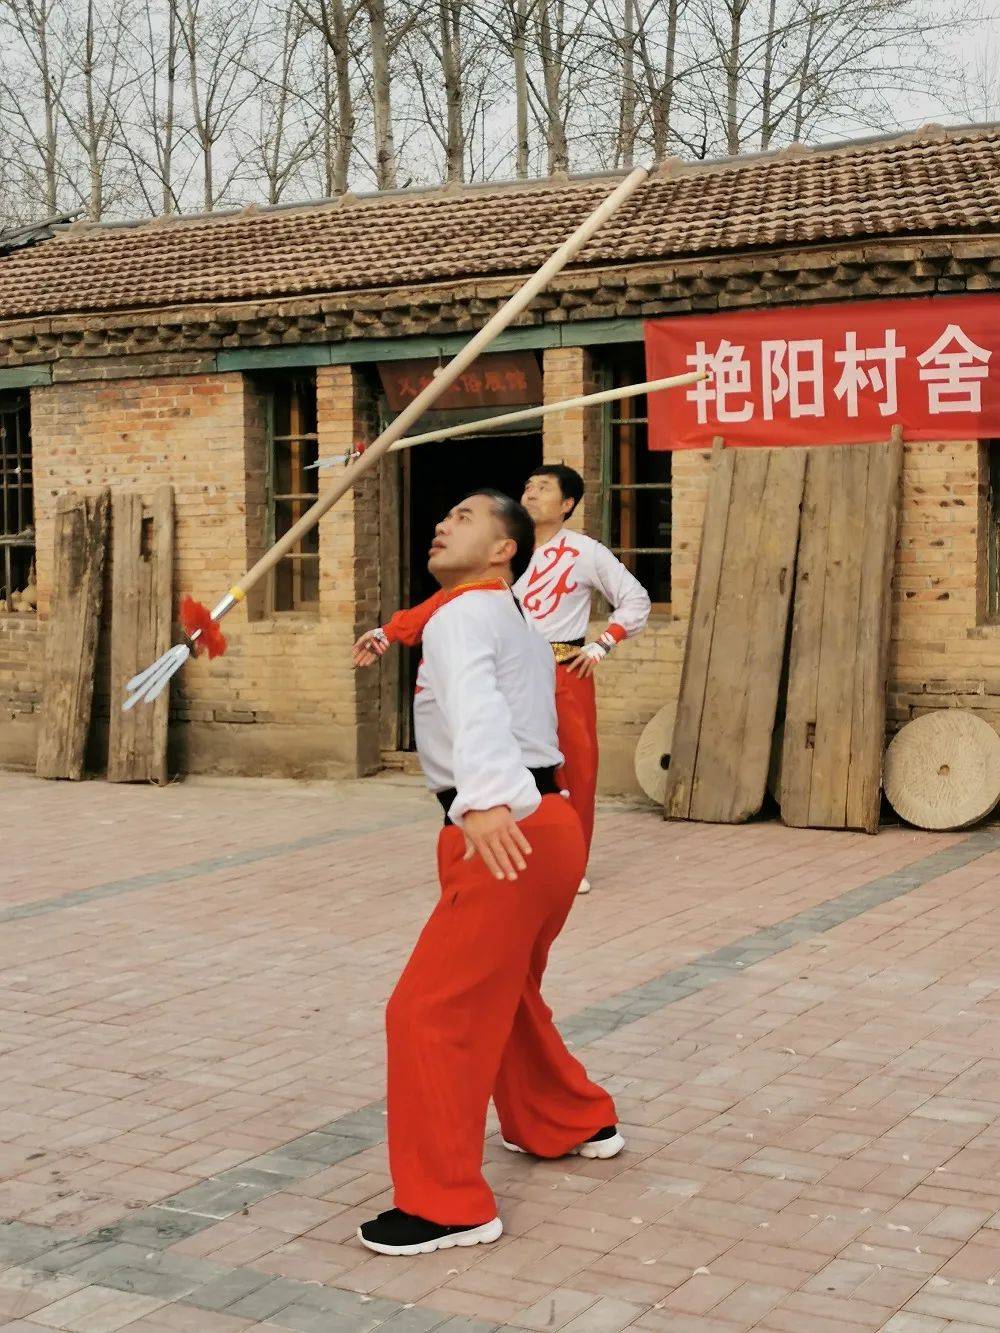 飞叉是集武术,杂技,祭祀,戏曲,民间花会等表现形式于一体的独特艺术